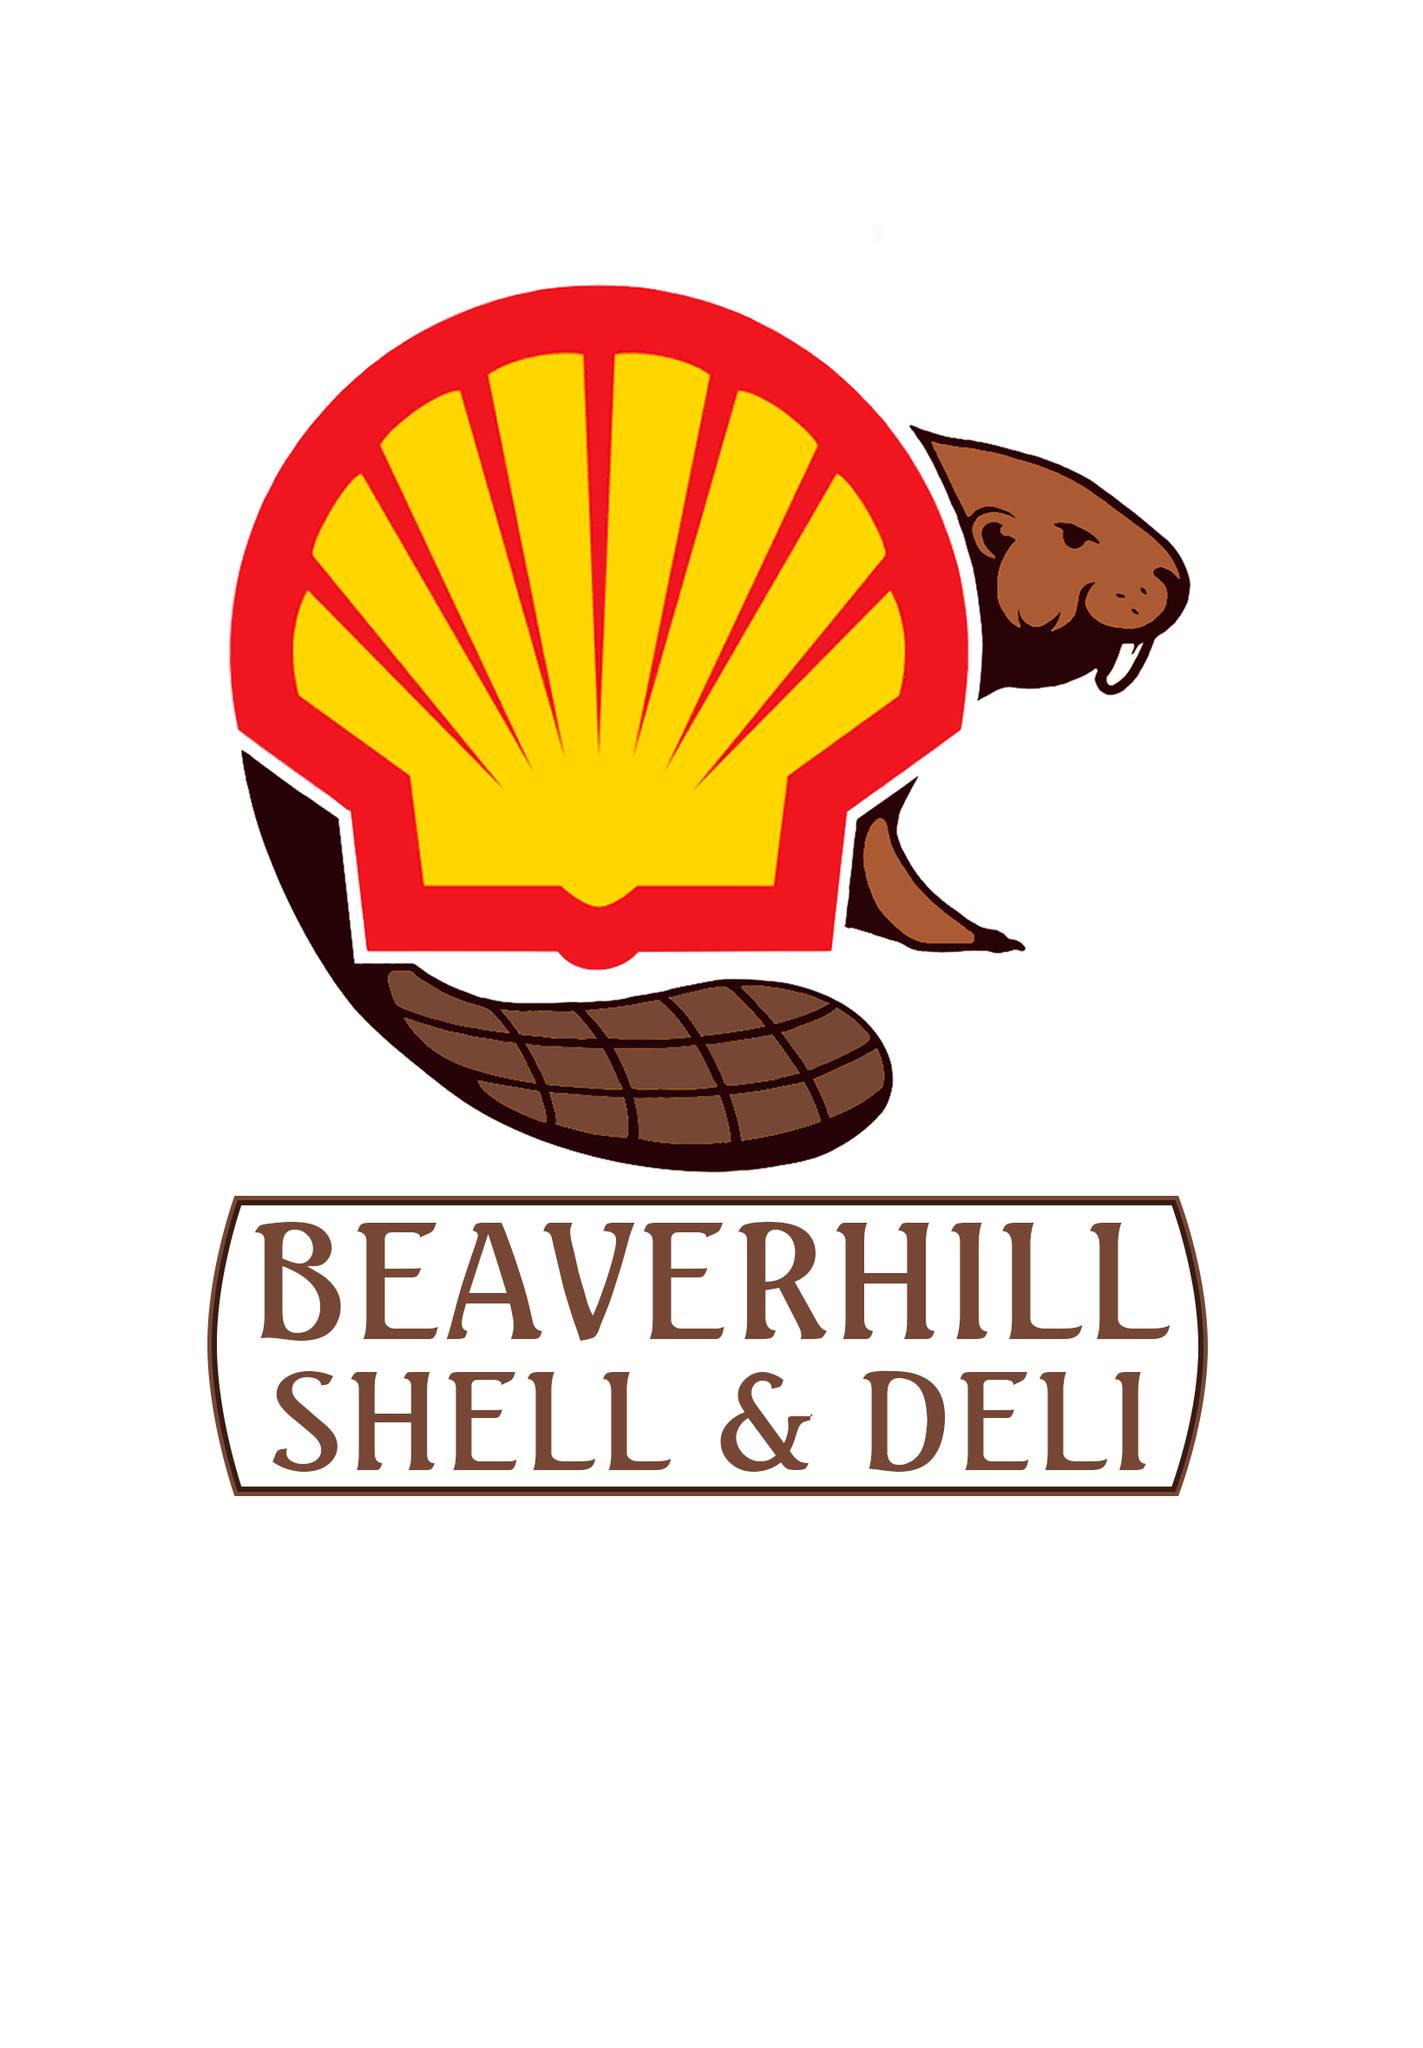 Beaverhill Shell & Deli